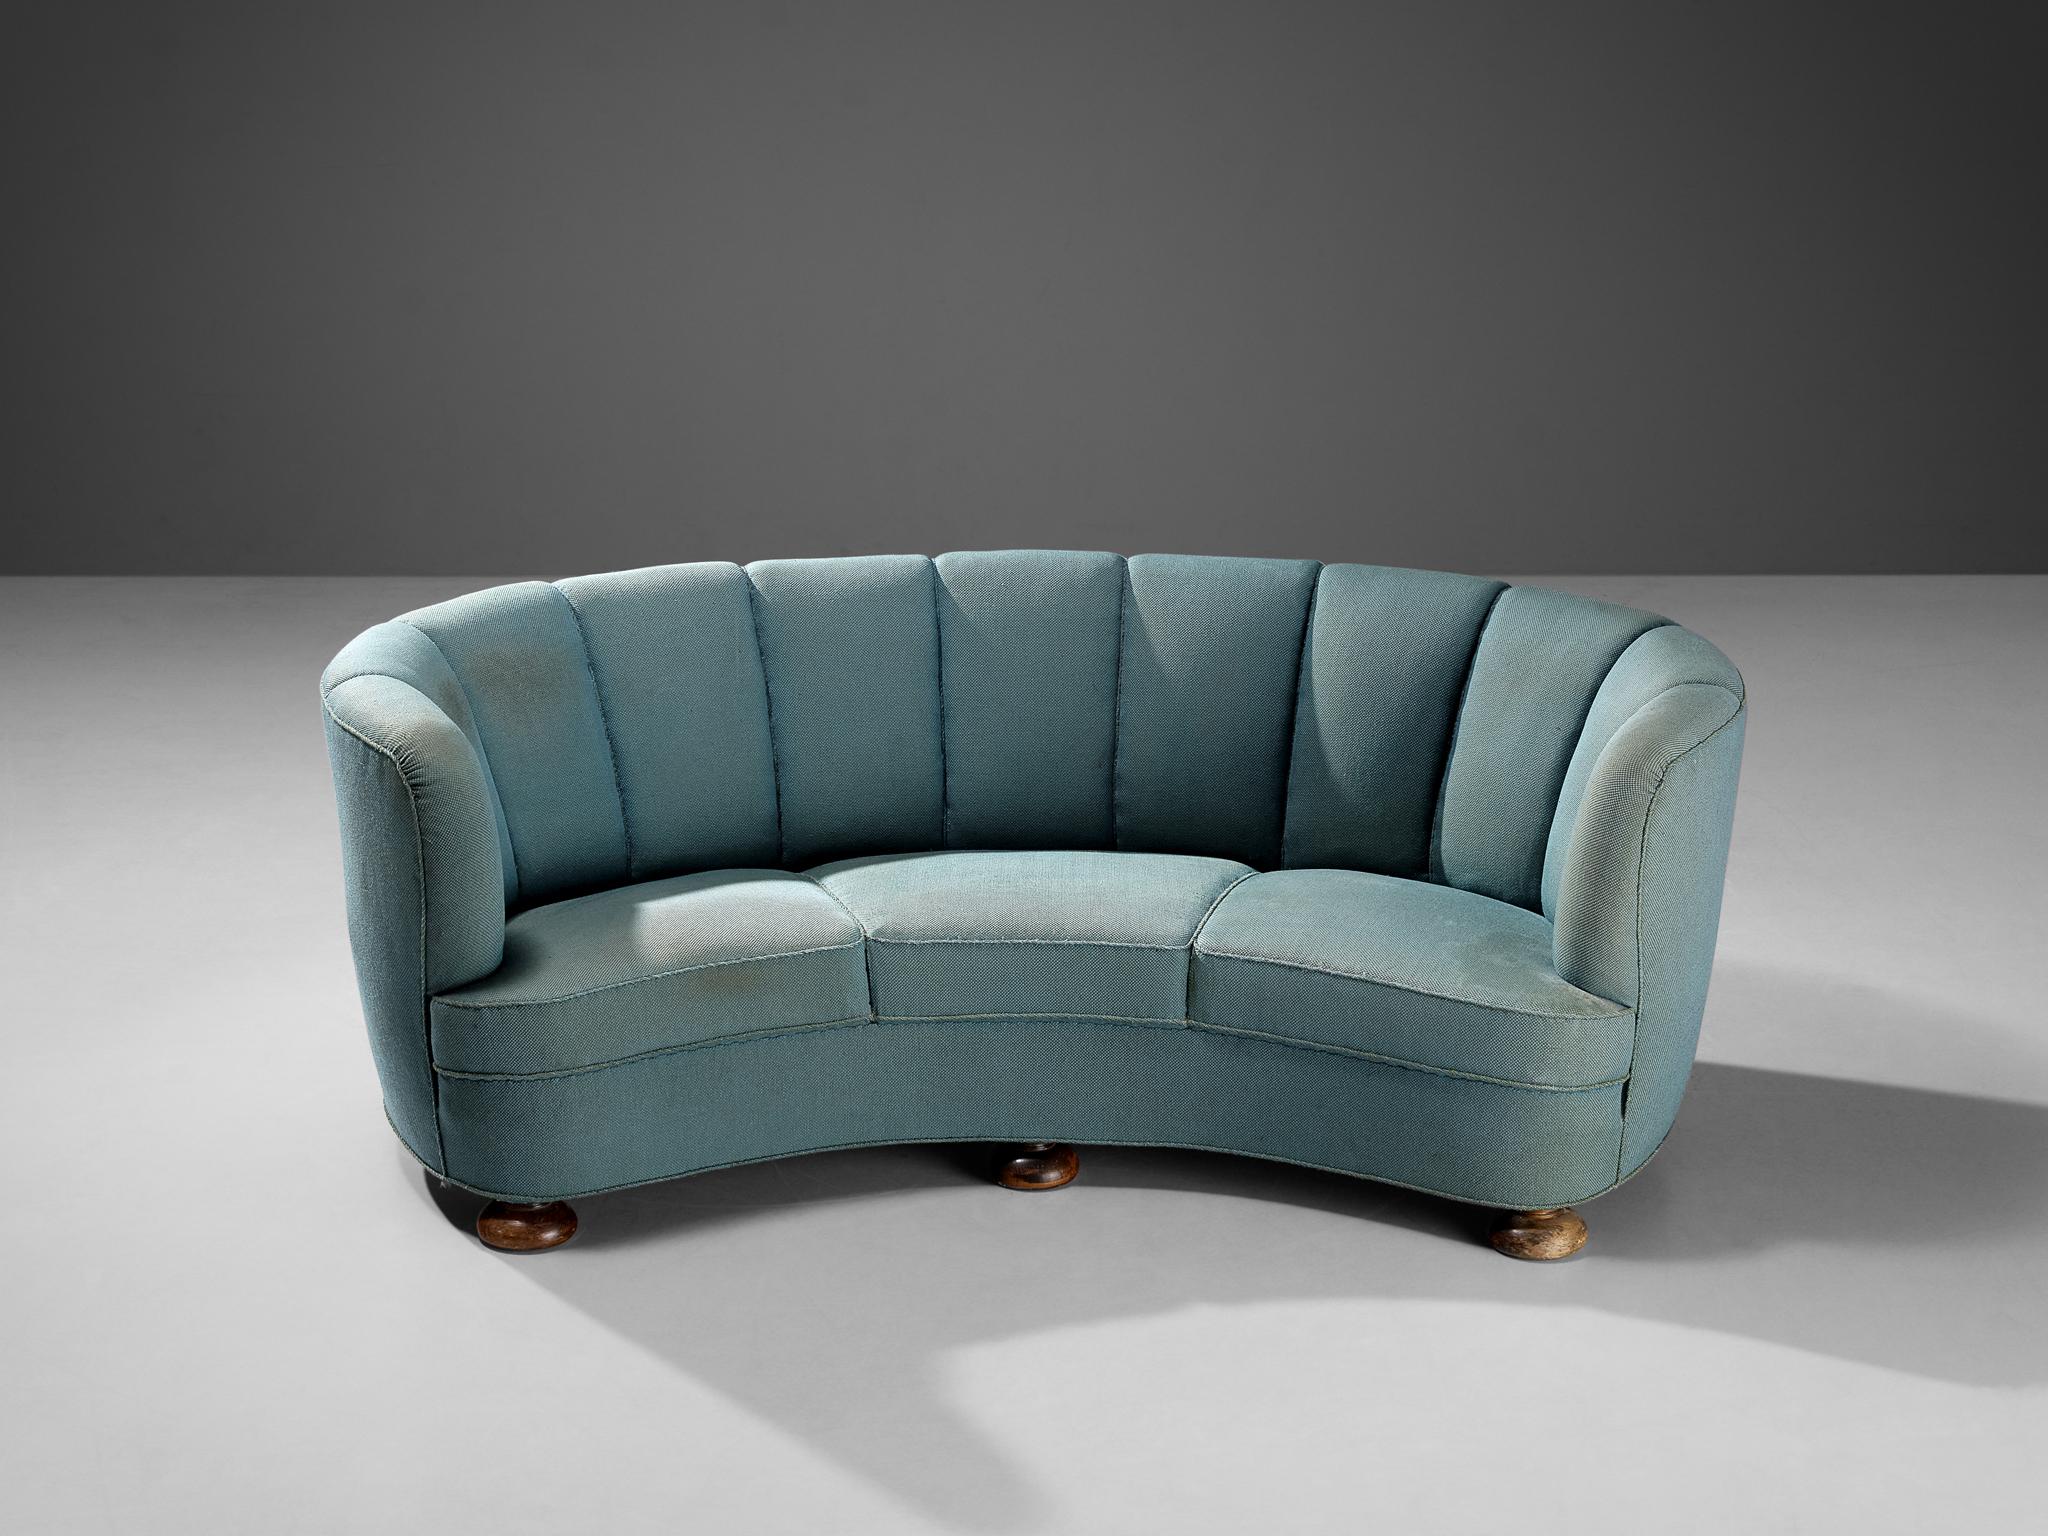 Bananensofa, Stoff, gebeiztes Holz, Dänemark, 1940er Jahre

Dieses üppige Sofa basiert auf einer soliden Konstruktion aus runden Formen und geschwungenen Linien. Die Sitzfläche und die Rückenlehne sind organisch geformt und zusammen mit dem Fehlen